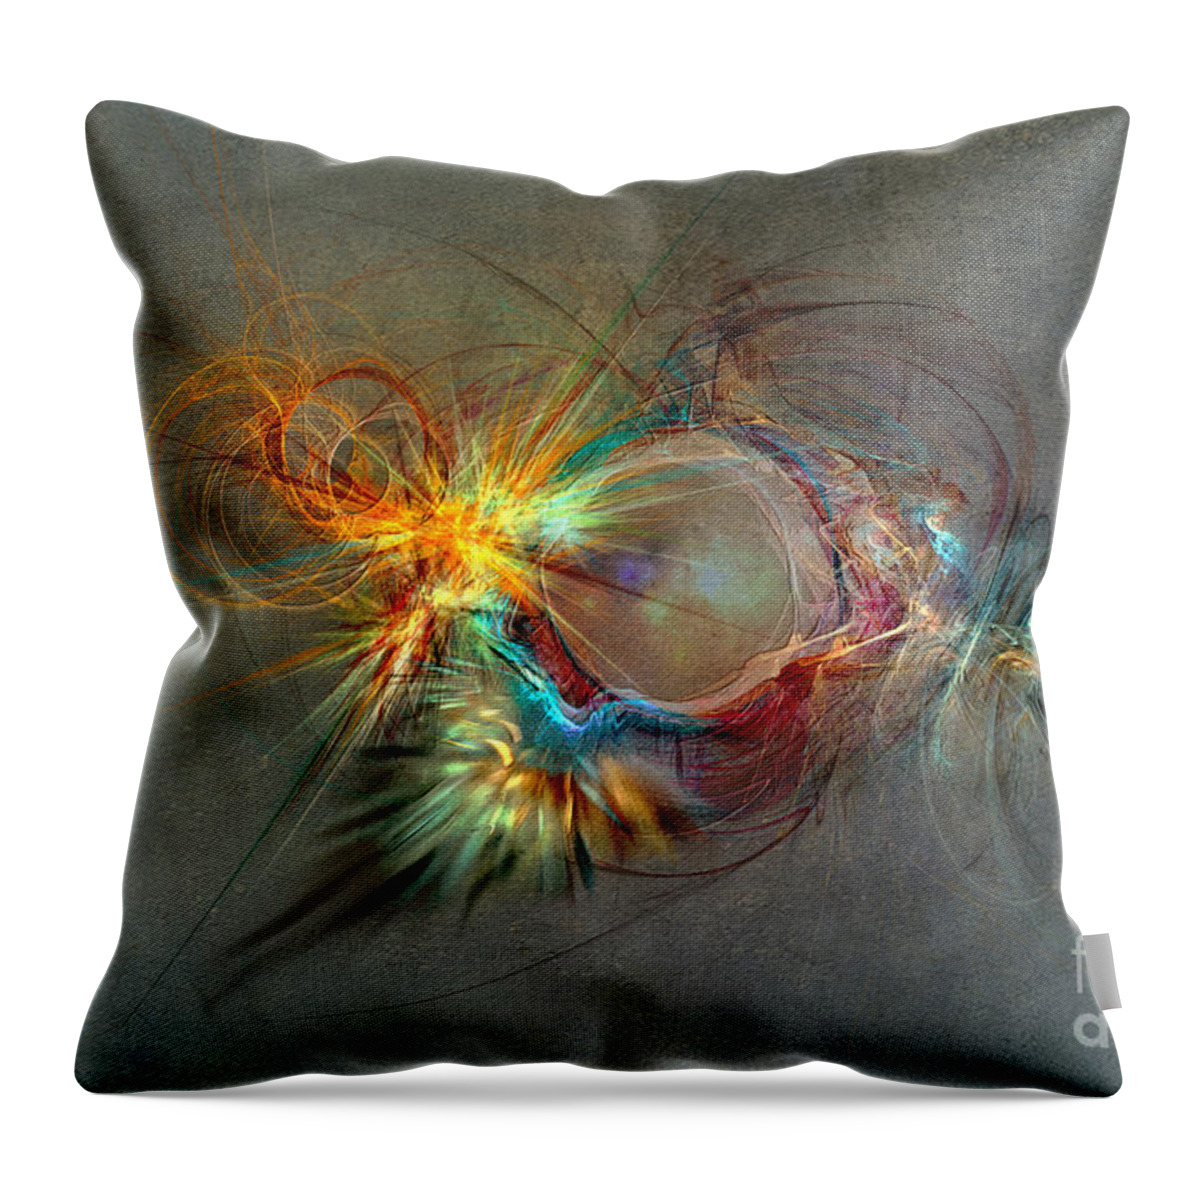 Fractal Throw Pillow featuring the digital art Fractal Art Beauty by Justyna Jaszke JBJart